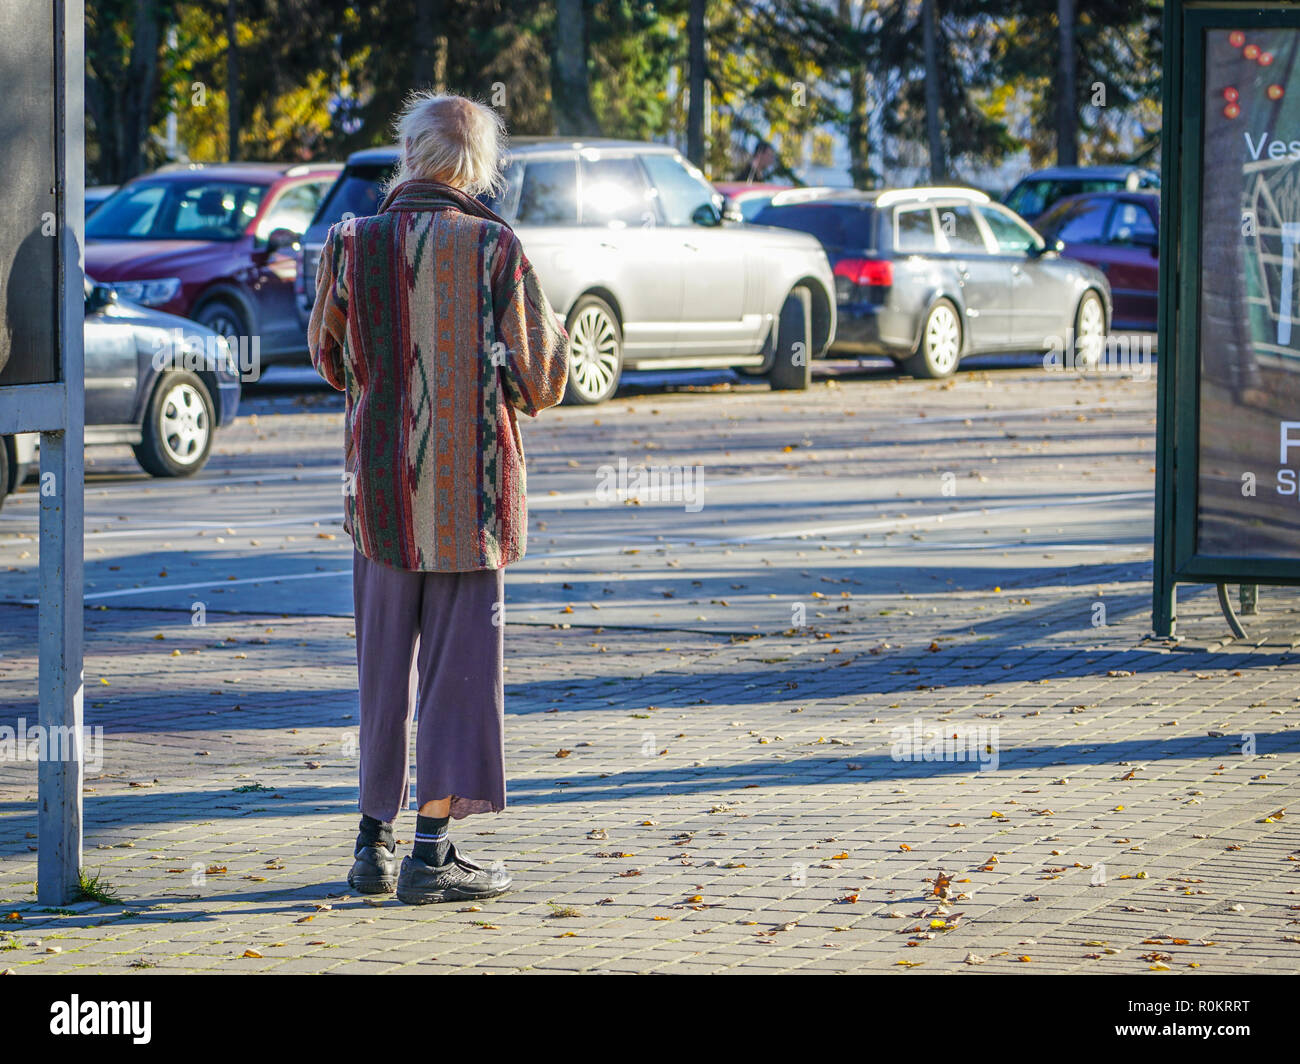 Eccentrico gentiluomo più vecchi in una piacevole passeggiata attraverso la città Foto Stock